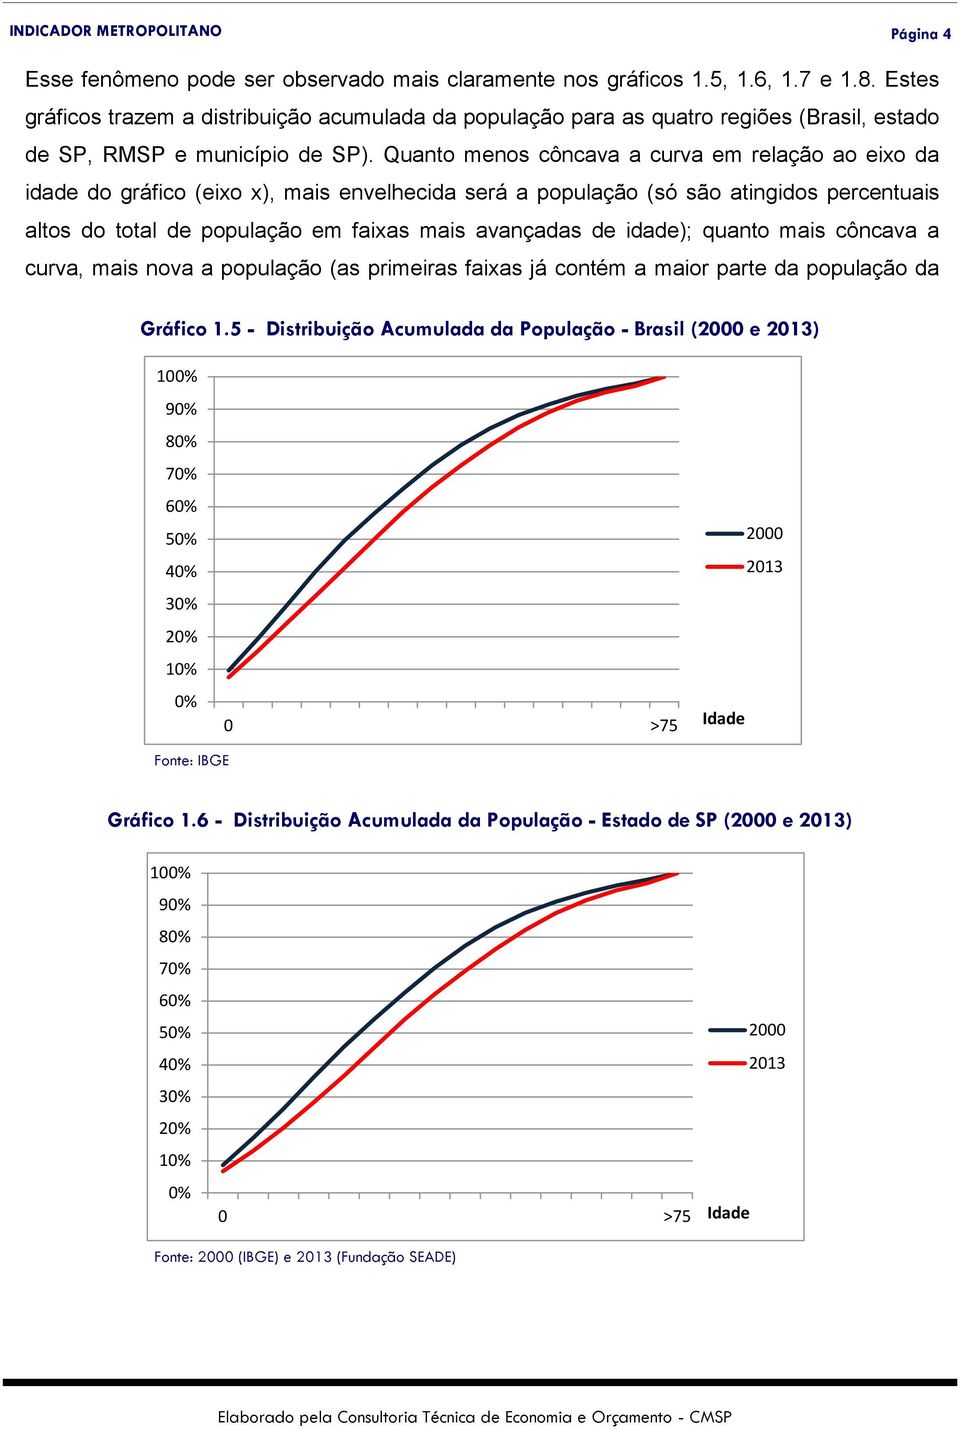 Quanto menos côncava a curva em relação ao eixo da idade do gráfico (eixo x), mais envelhecida será a população (só são atingidos percentuais altos do total de população em faixas mais avançadas de